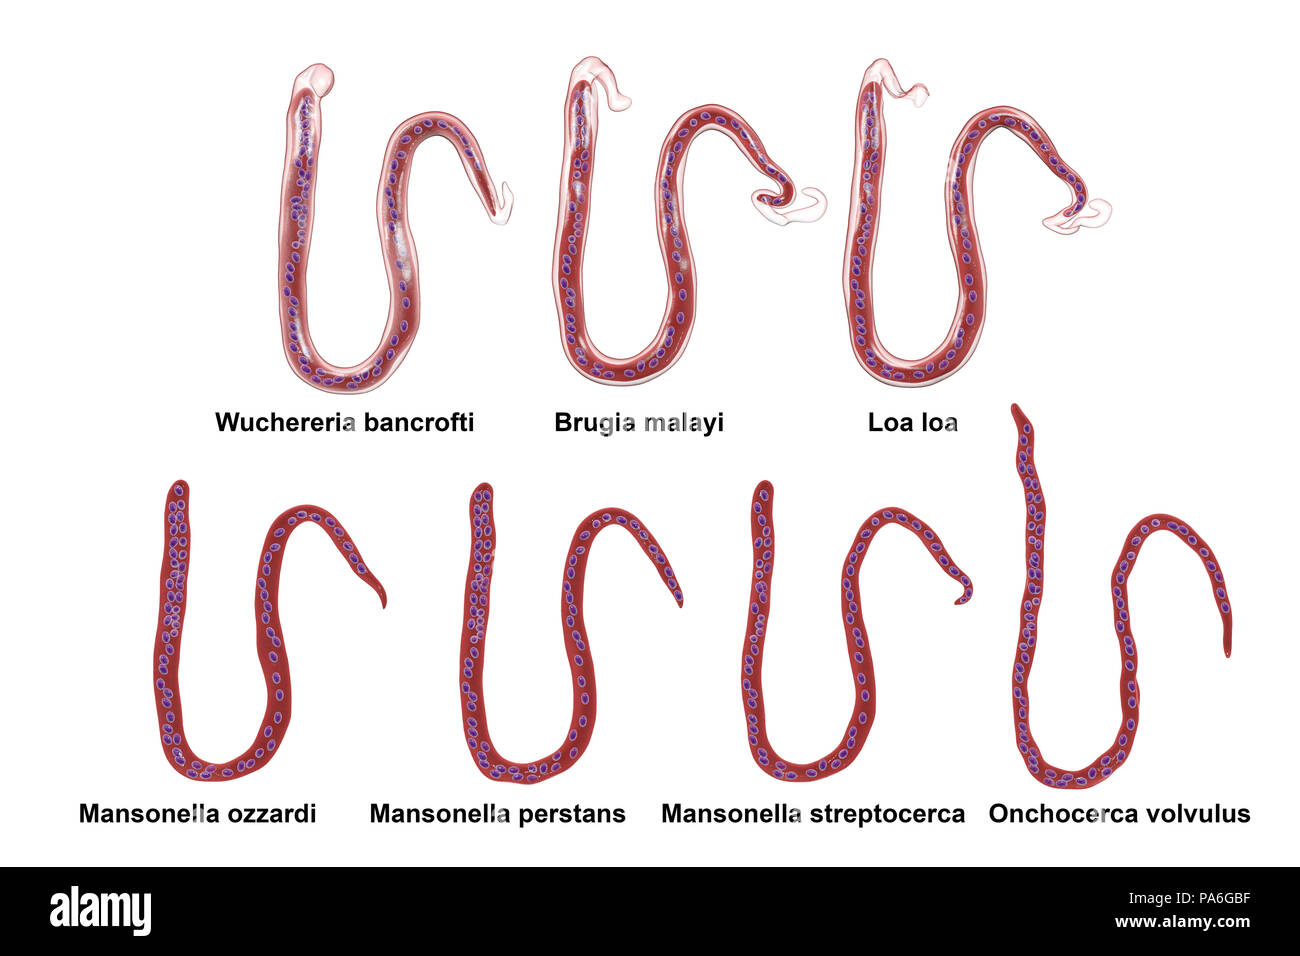 Vergleich der microfilariae Morphologie. Computer Abbildung: Umhüllten und ummantelte microfilaria Würmer unterschiedliche auch durch Schwanz Kerne Lage. Stockfoto